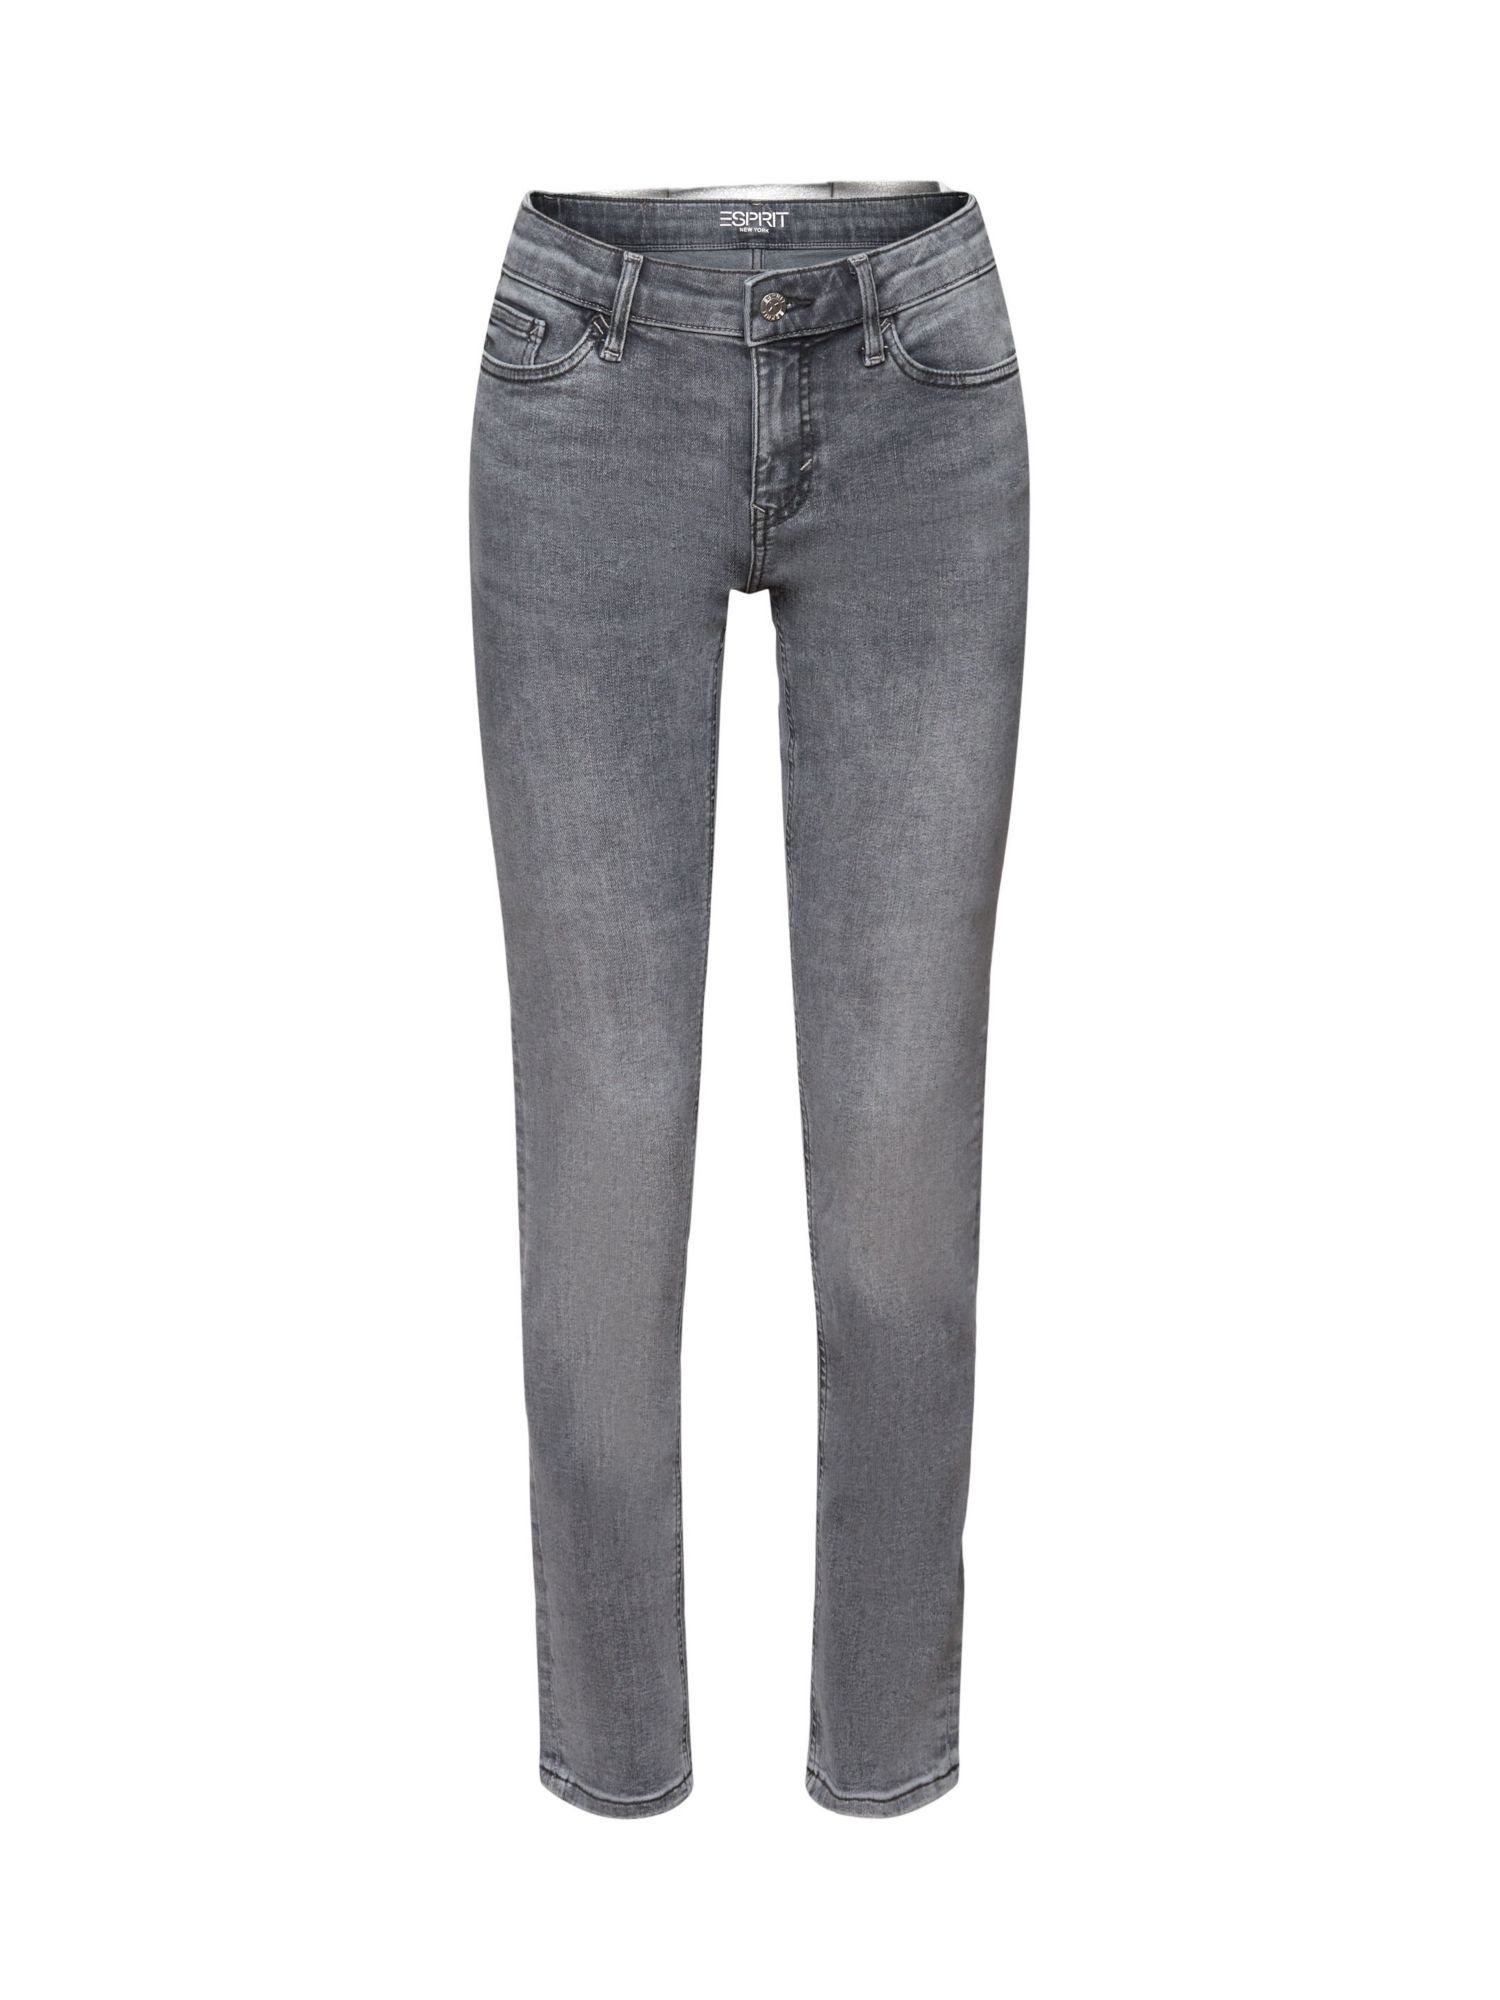 Bundhöhe mit Jeans mittlerer Esprit Slim-fit-Jeans schmaler Passform und